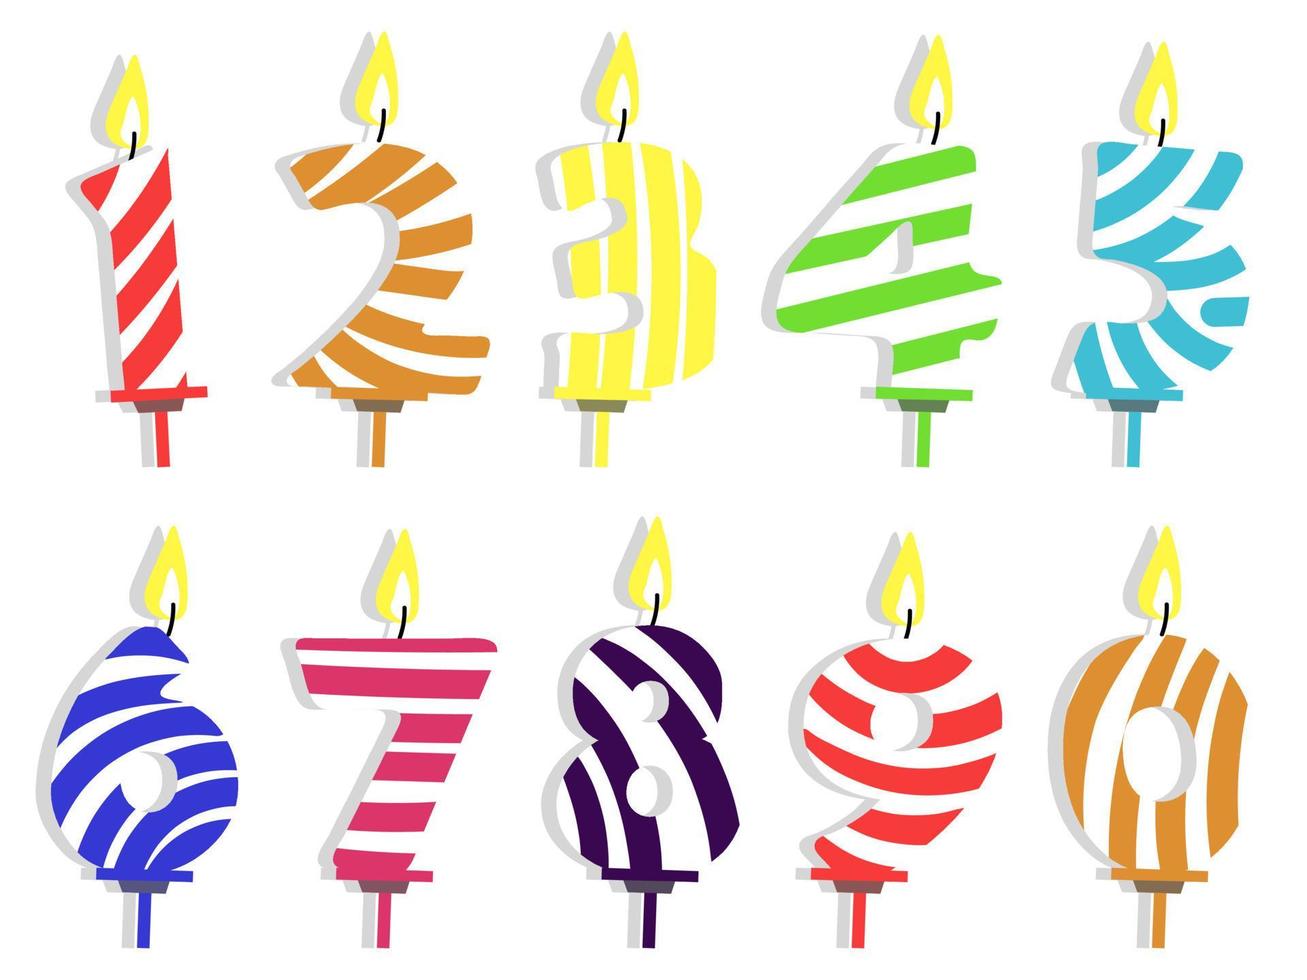 ensemble d'articles plats de bougies de numéro d'anniversaire coloré créatif. bougies de dessin animé pour la collection d'illustrations vectorielles isolées de gâteau d'anniversaire. concept de célébration et de décoration. impression de cartes postales, bannières vecteur